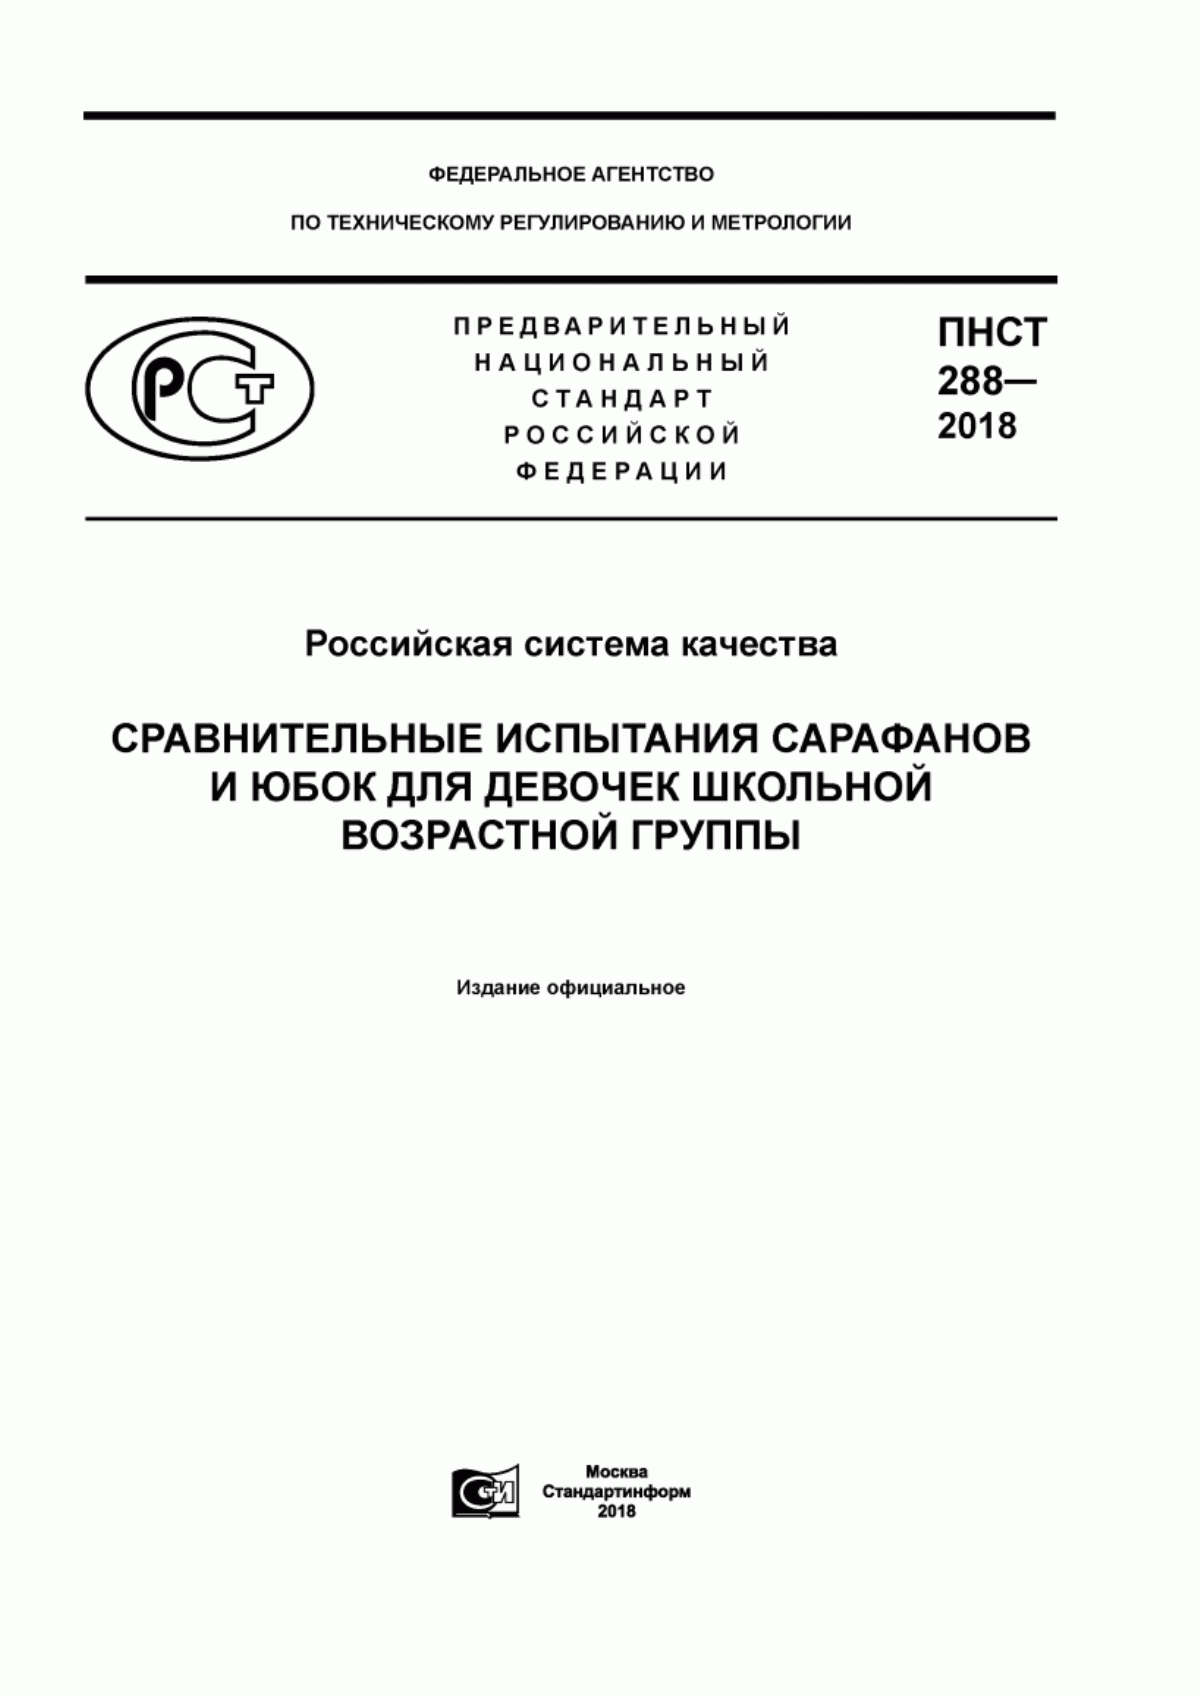 ПНСТ 288-2018 Российская система качества. Сравнительные испытания сарафанов и юбок для девочек школьной возрастной группы